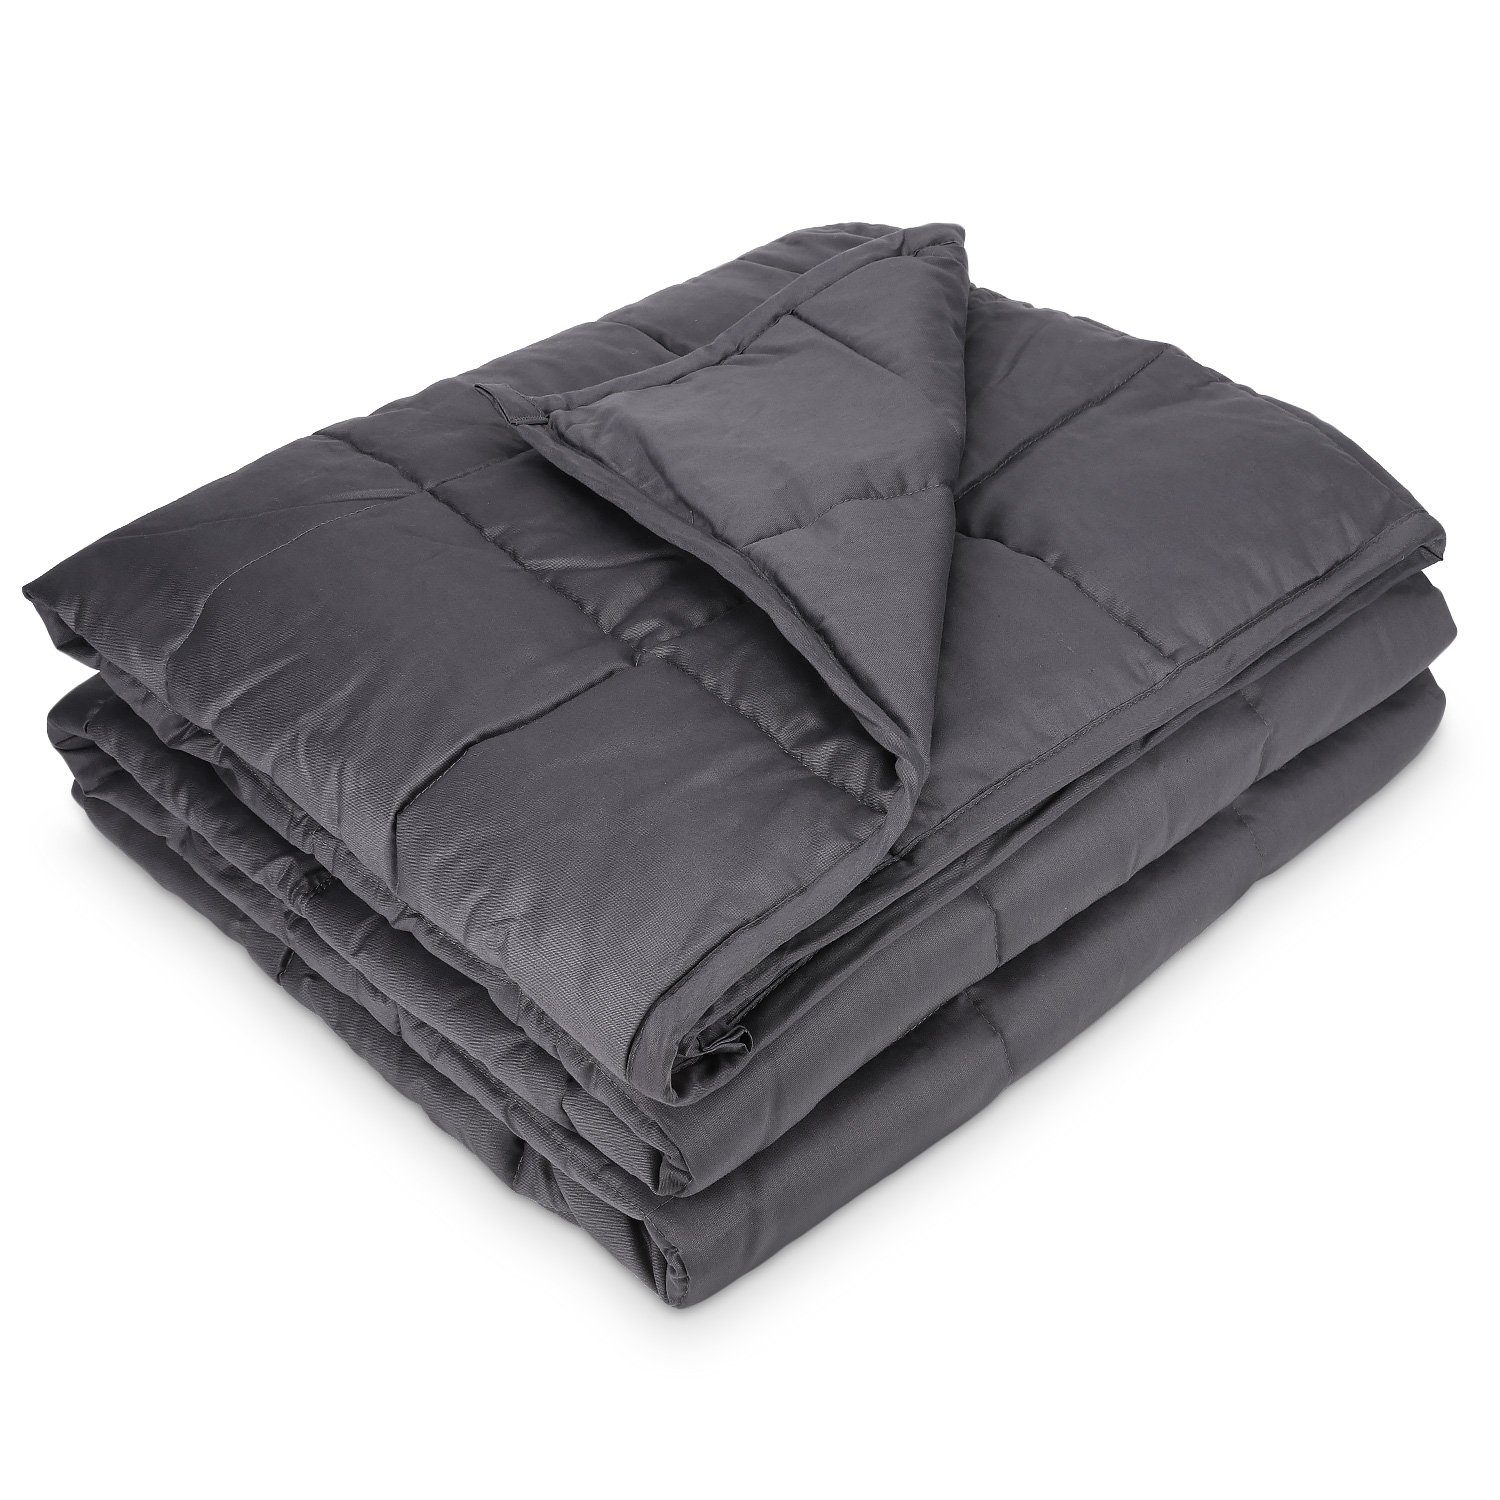 135x200 cm mit 365-Tage Bezug Therapiedecke Oeko-TEX Standard 100 8 Kg Schwere Decke als Einschlafhilfe Erwachsene 